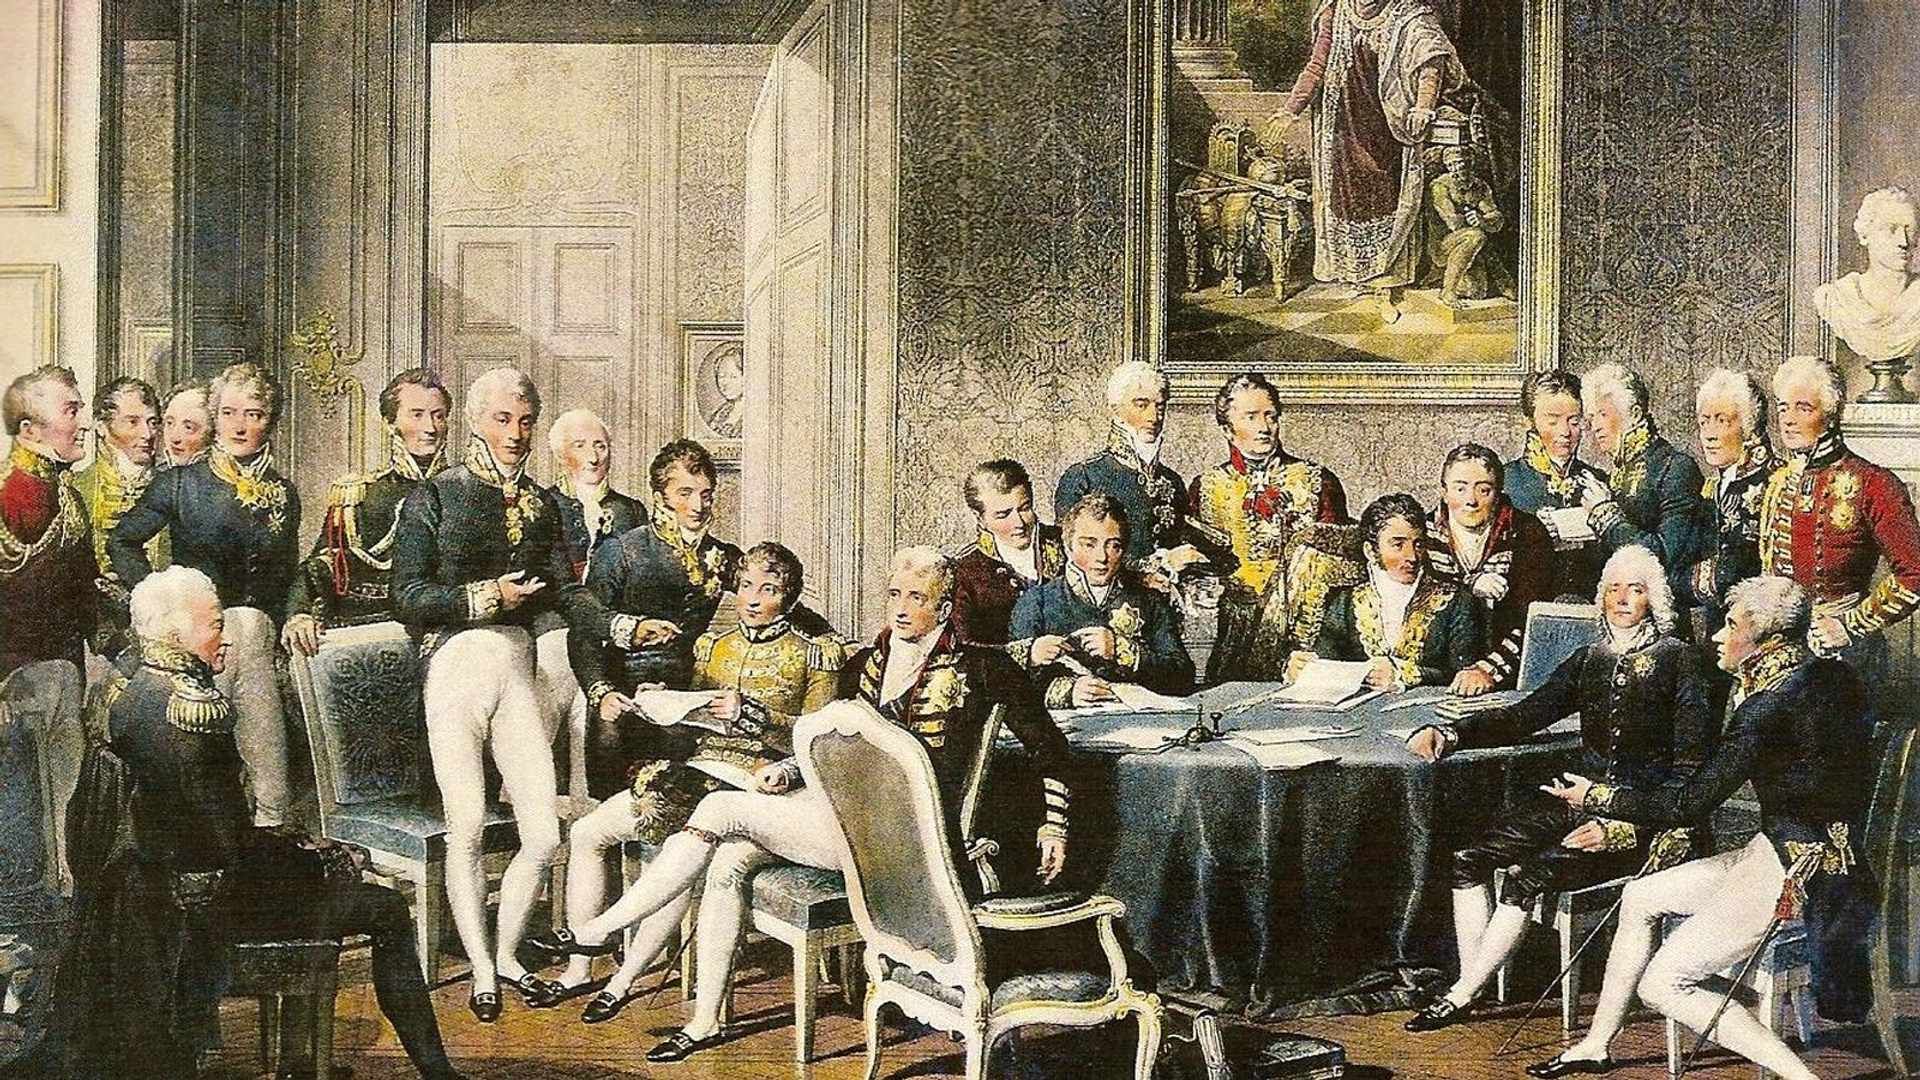 Delegados de las potencias europeas en discusiones políticas en el Congreso de Viena, en un grabado de Jean-Baptiste Isabey.